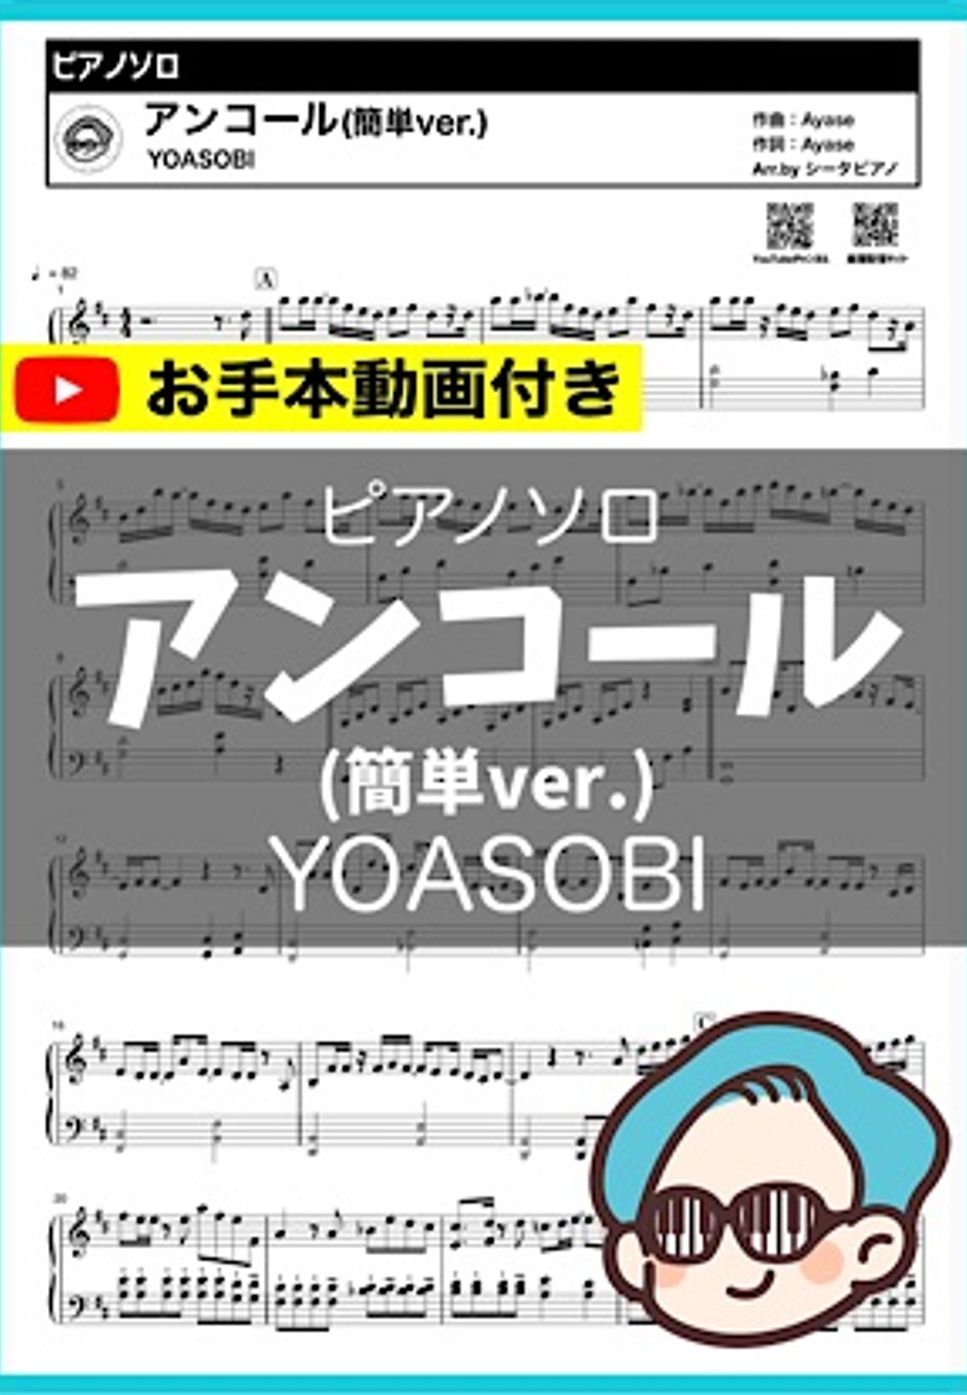 YOASOBI - アンコール (簡単ver.) by シータピアノ